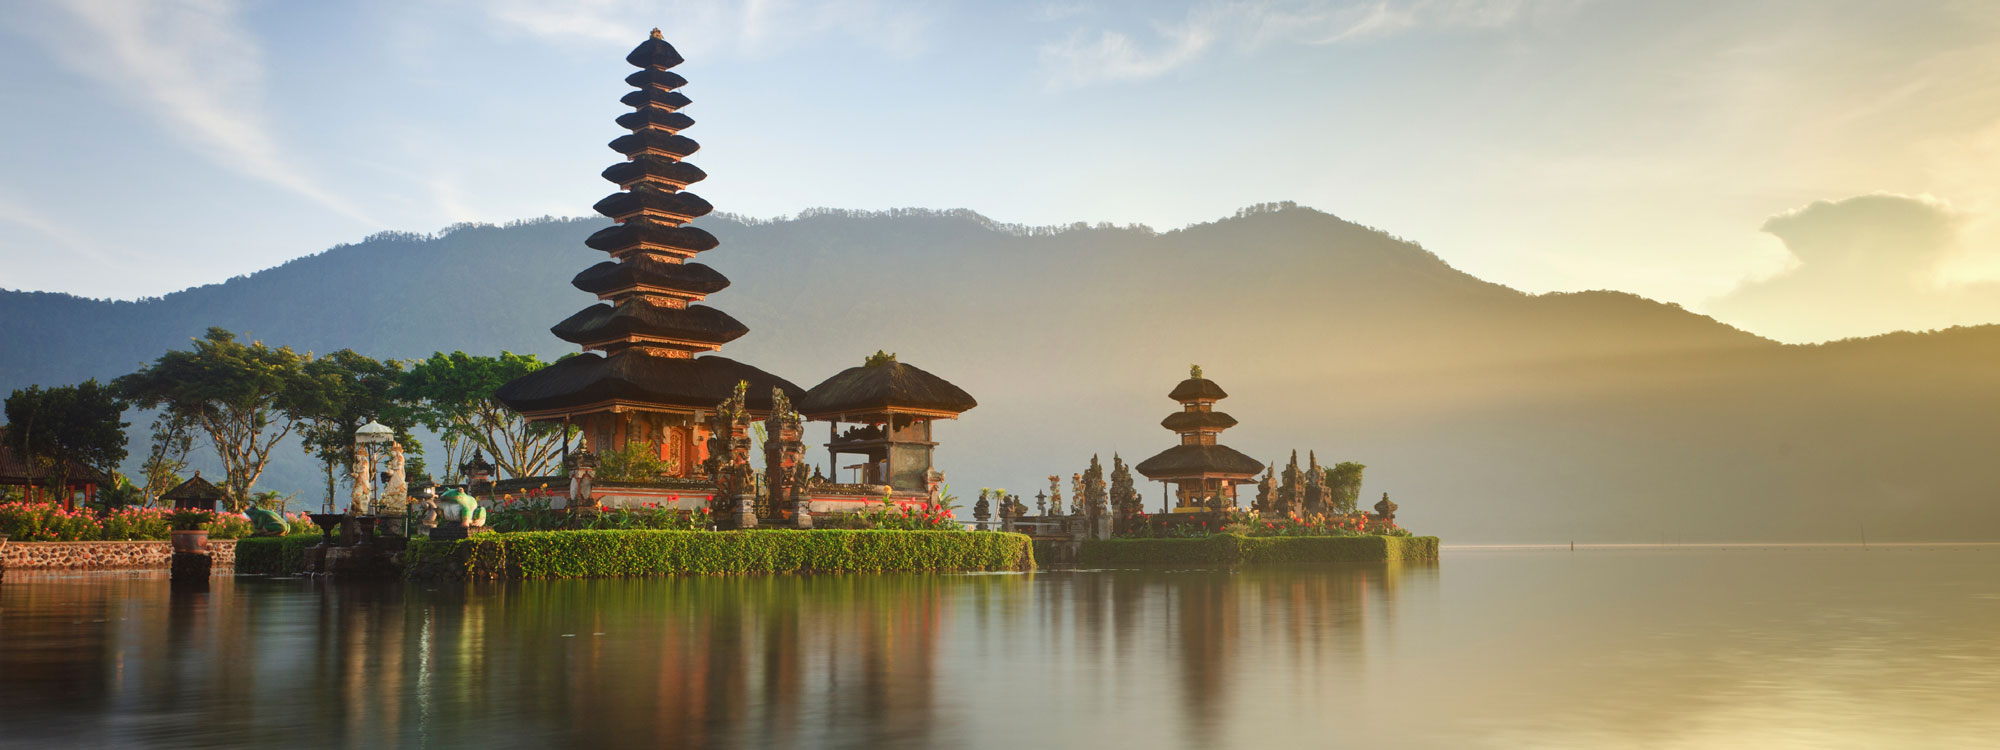 Indonesien: Bali, OYO Flagship 910 Menara Rungkut Surabaya vom 2022-06-29 bis 2022-06-30 für 3 EUR p.P.